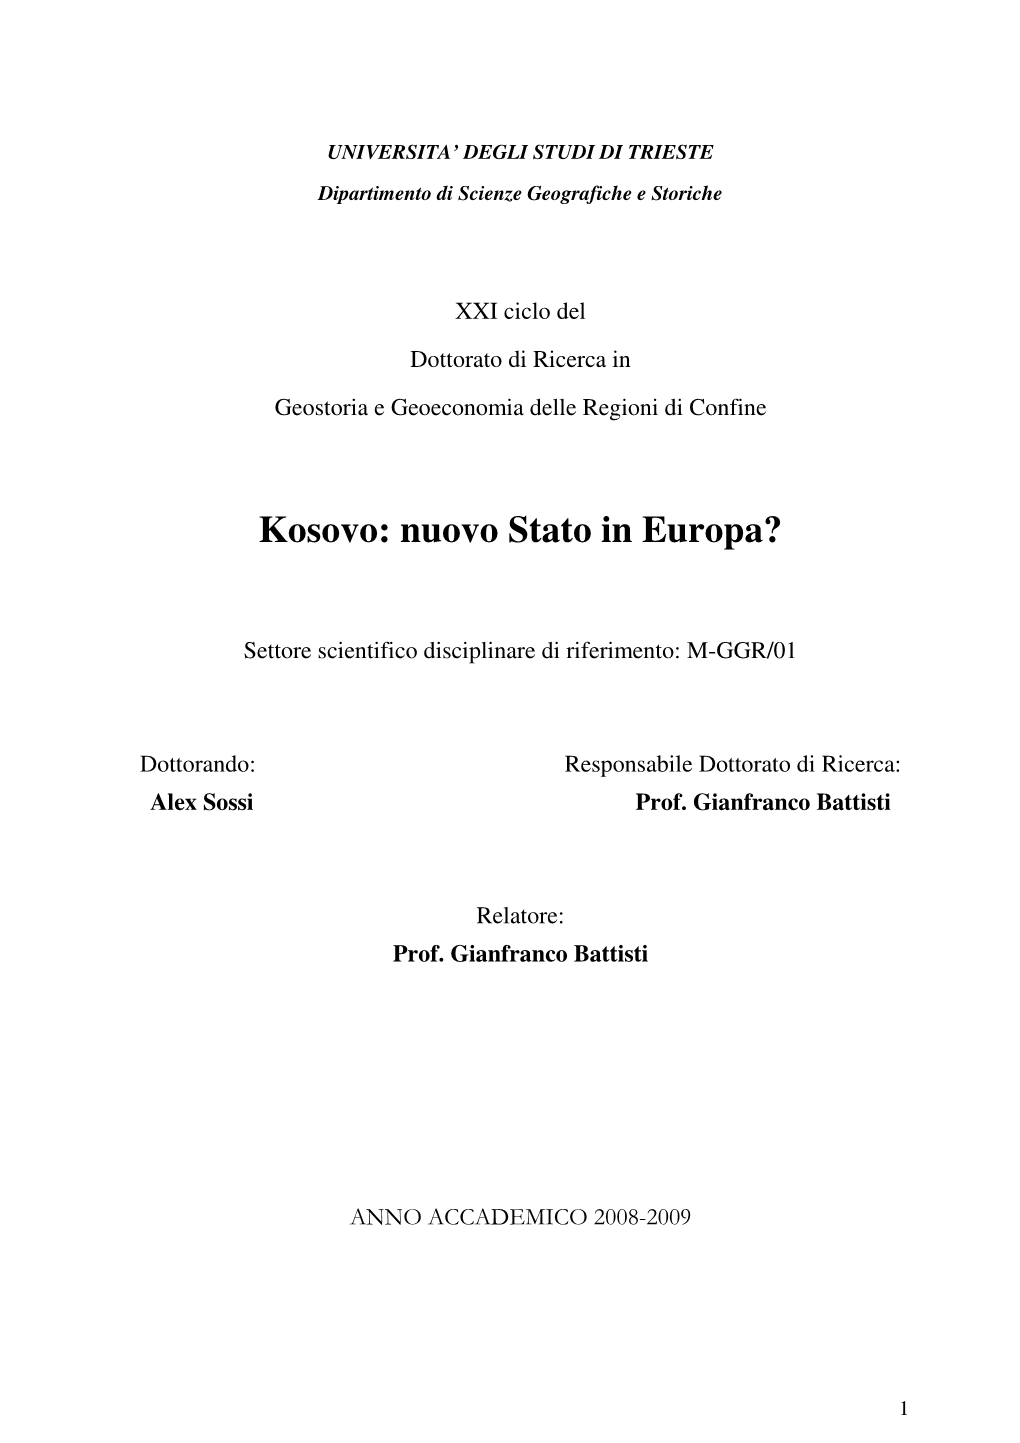 Kosovo: Nuovo Stato in Europa?